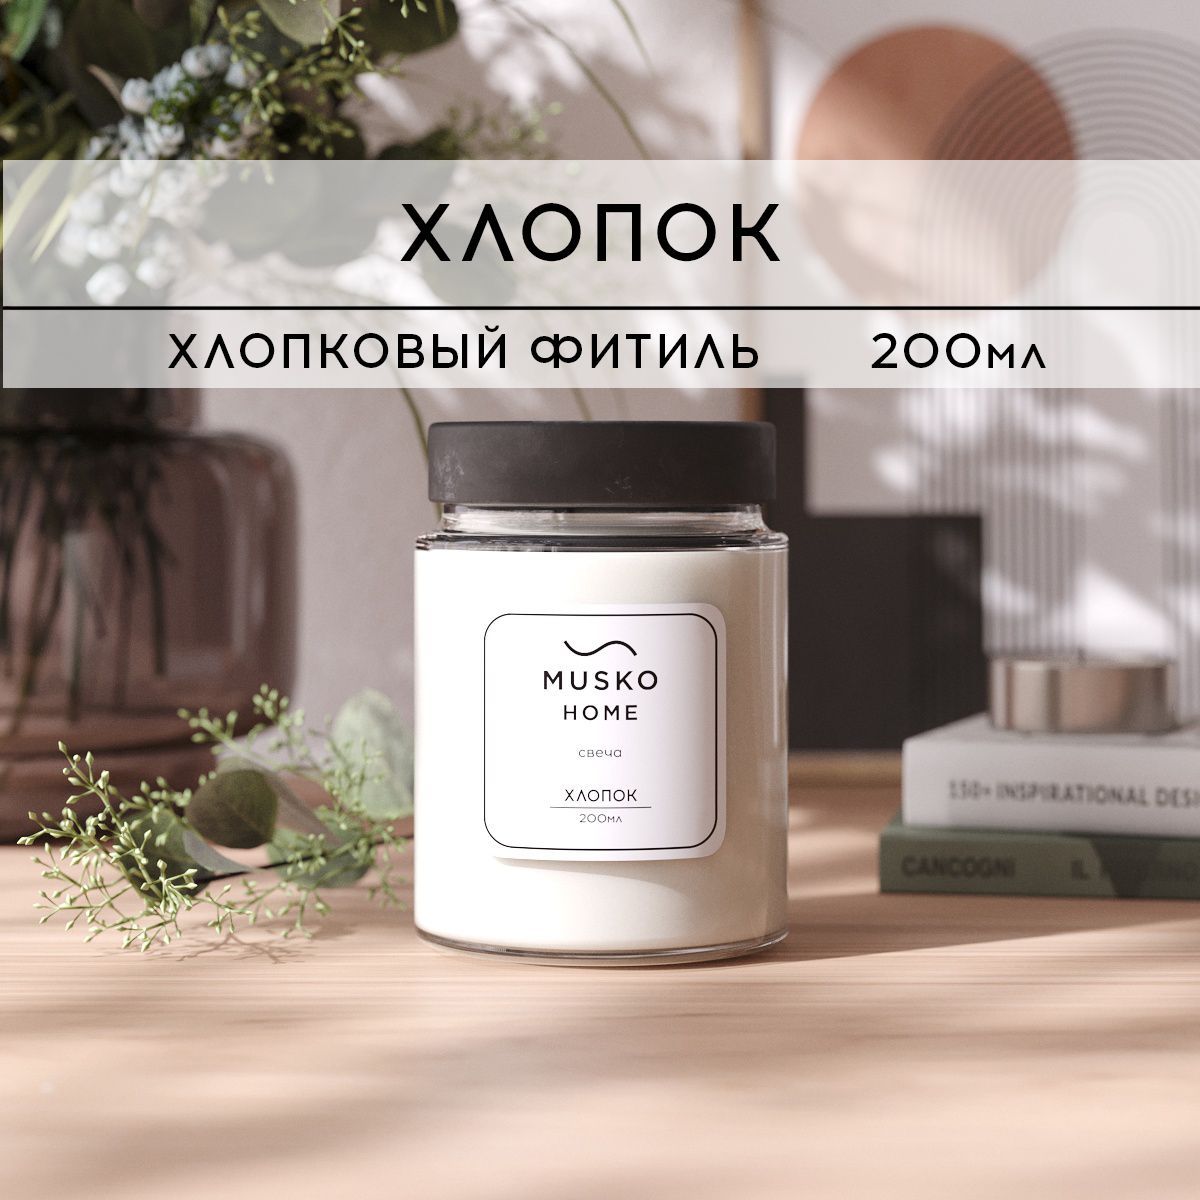 Свеча ароматическая MUSKO HOME - Нежный хлопок, 200 мл, хлопковый фитиль